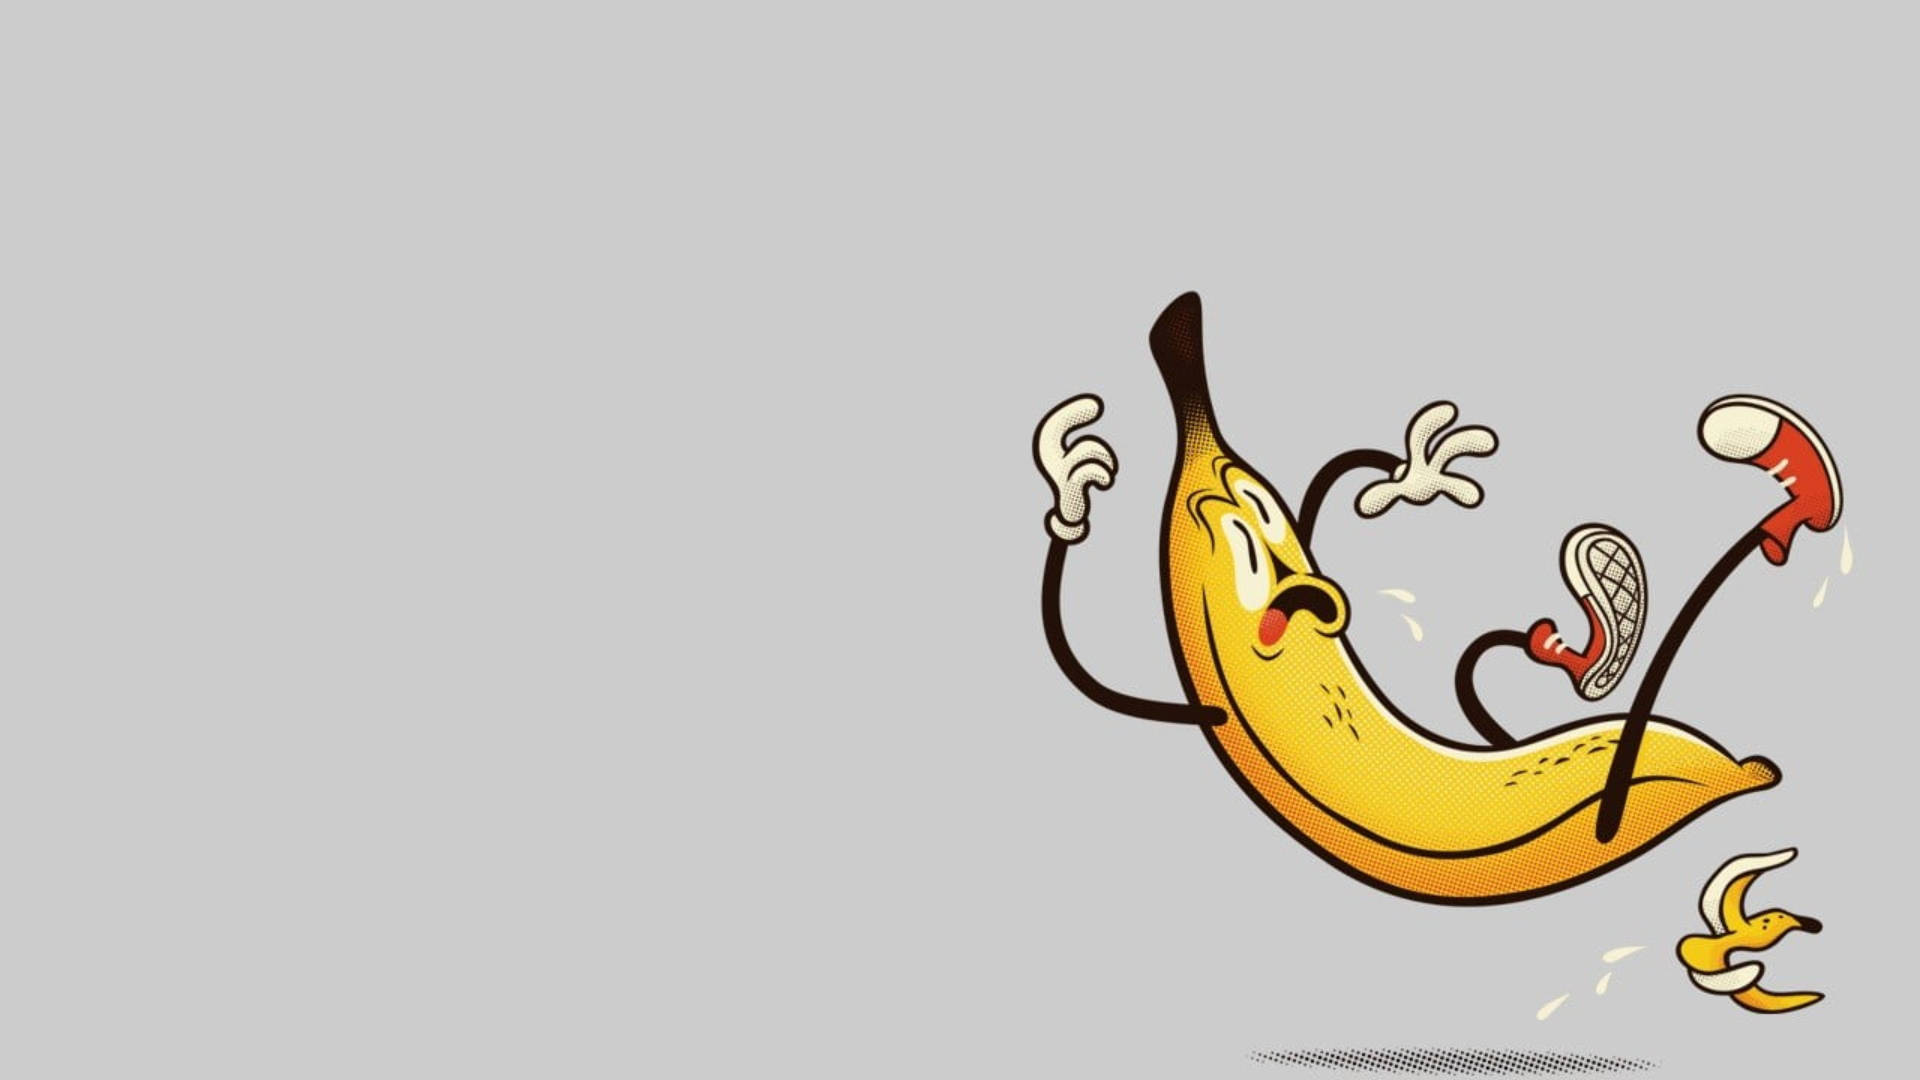 Slipping Banana Cartoon Background